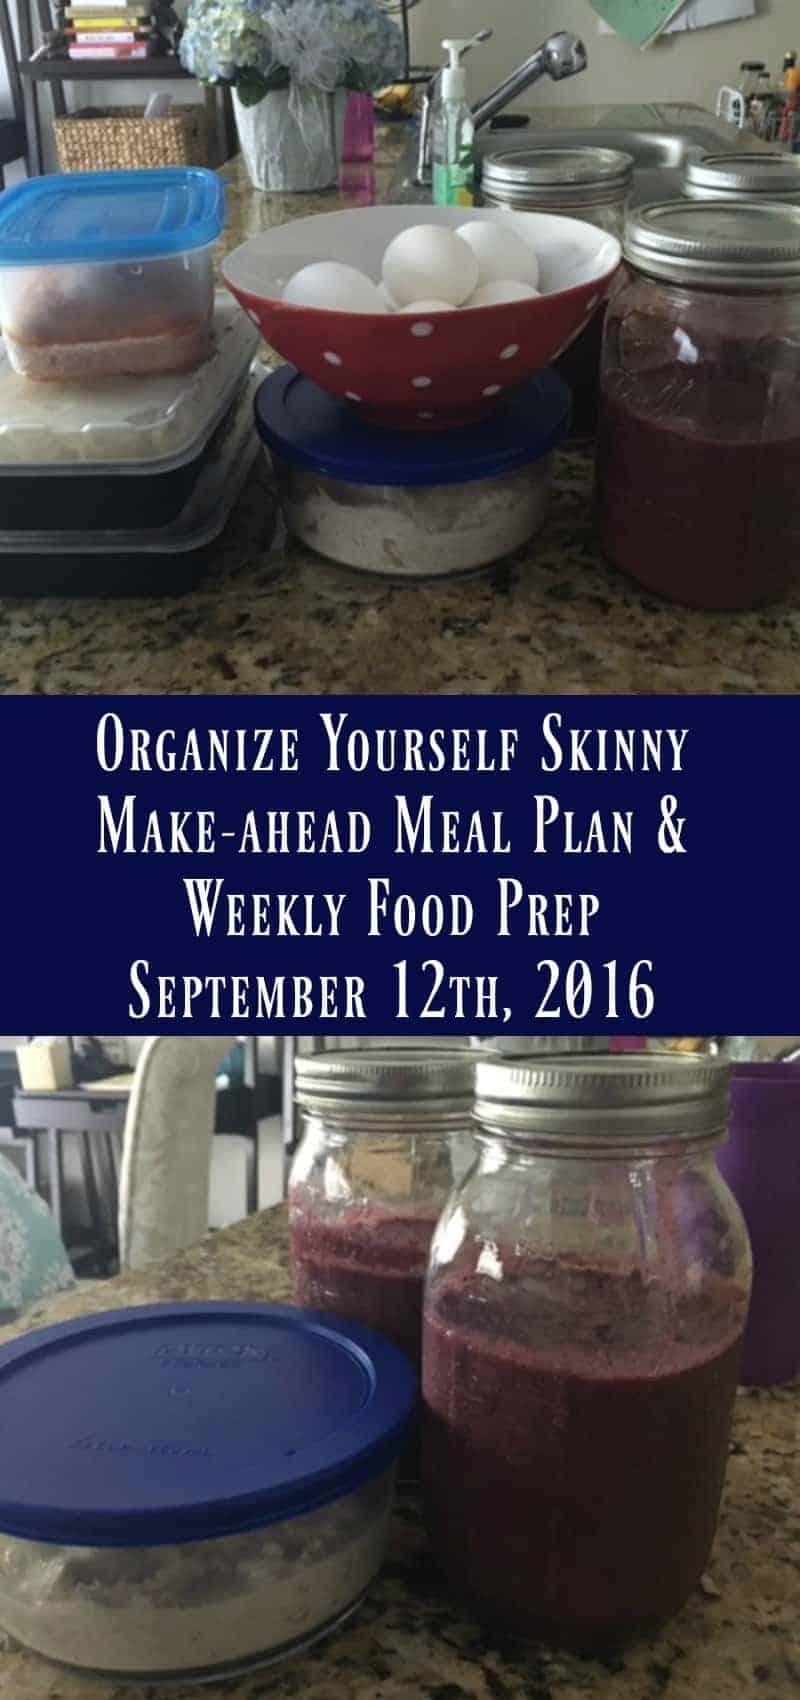 Make-ahead Meal Plan and Weekly Food Prep